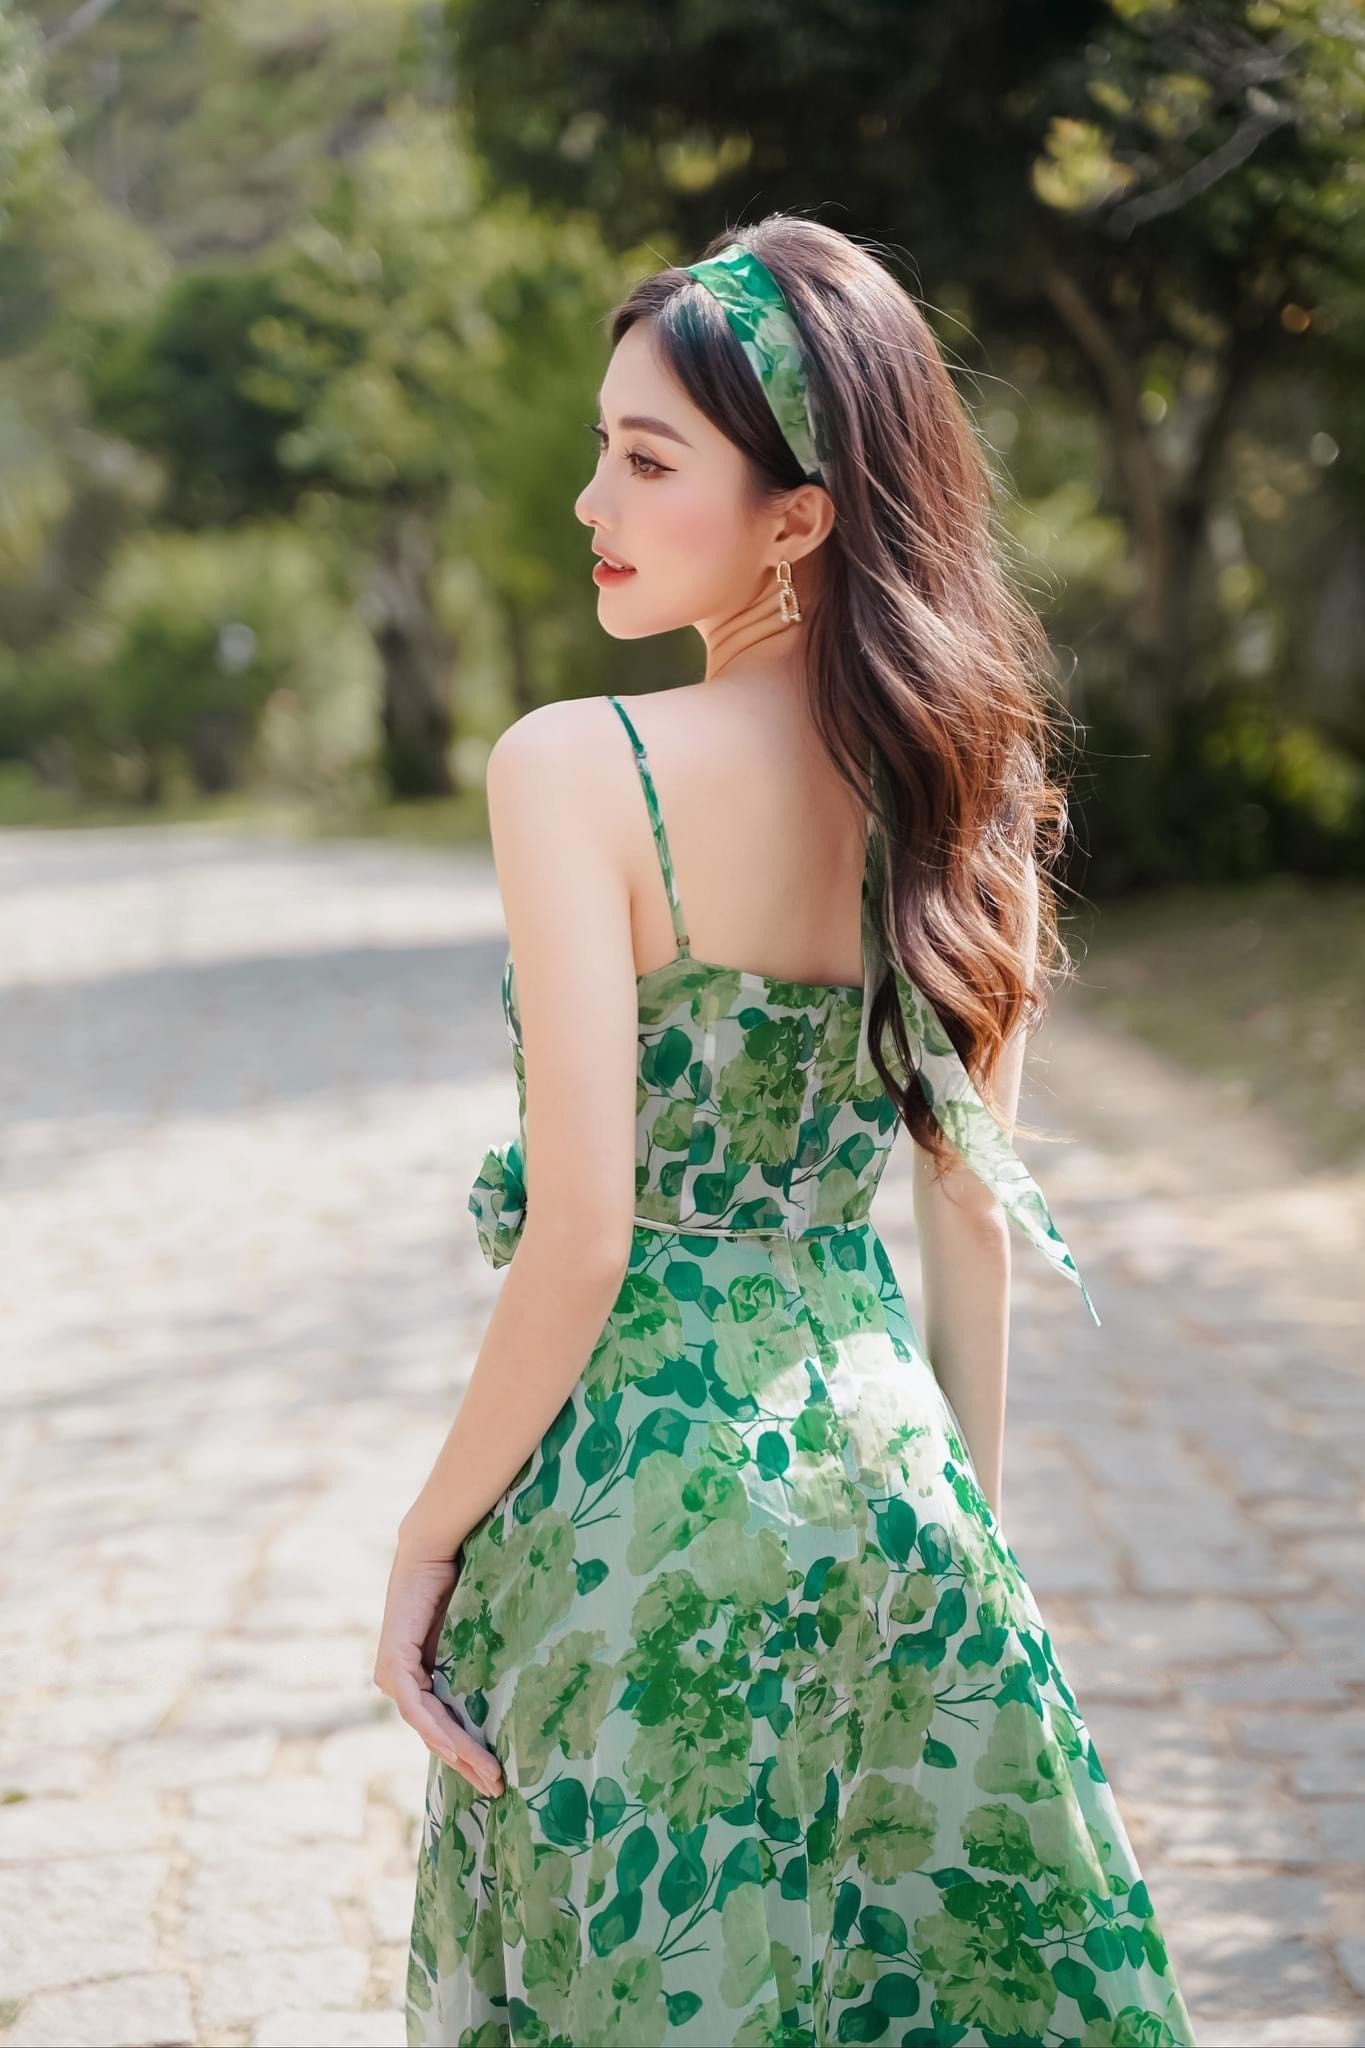 Đầm/Váy Đẹp Maxi Hai Dây Thiết Kế Họa Tiết Hoa Lá Xanh Thời Trang Nữ - VADLADY